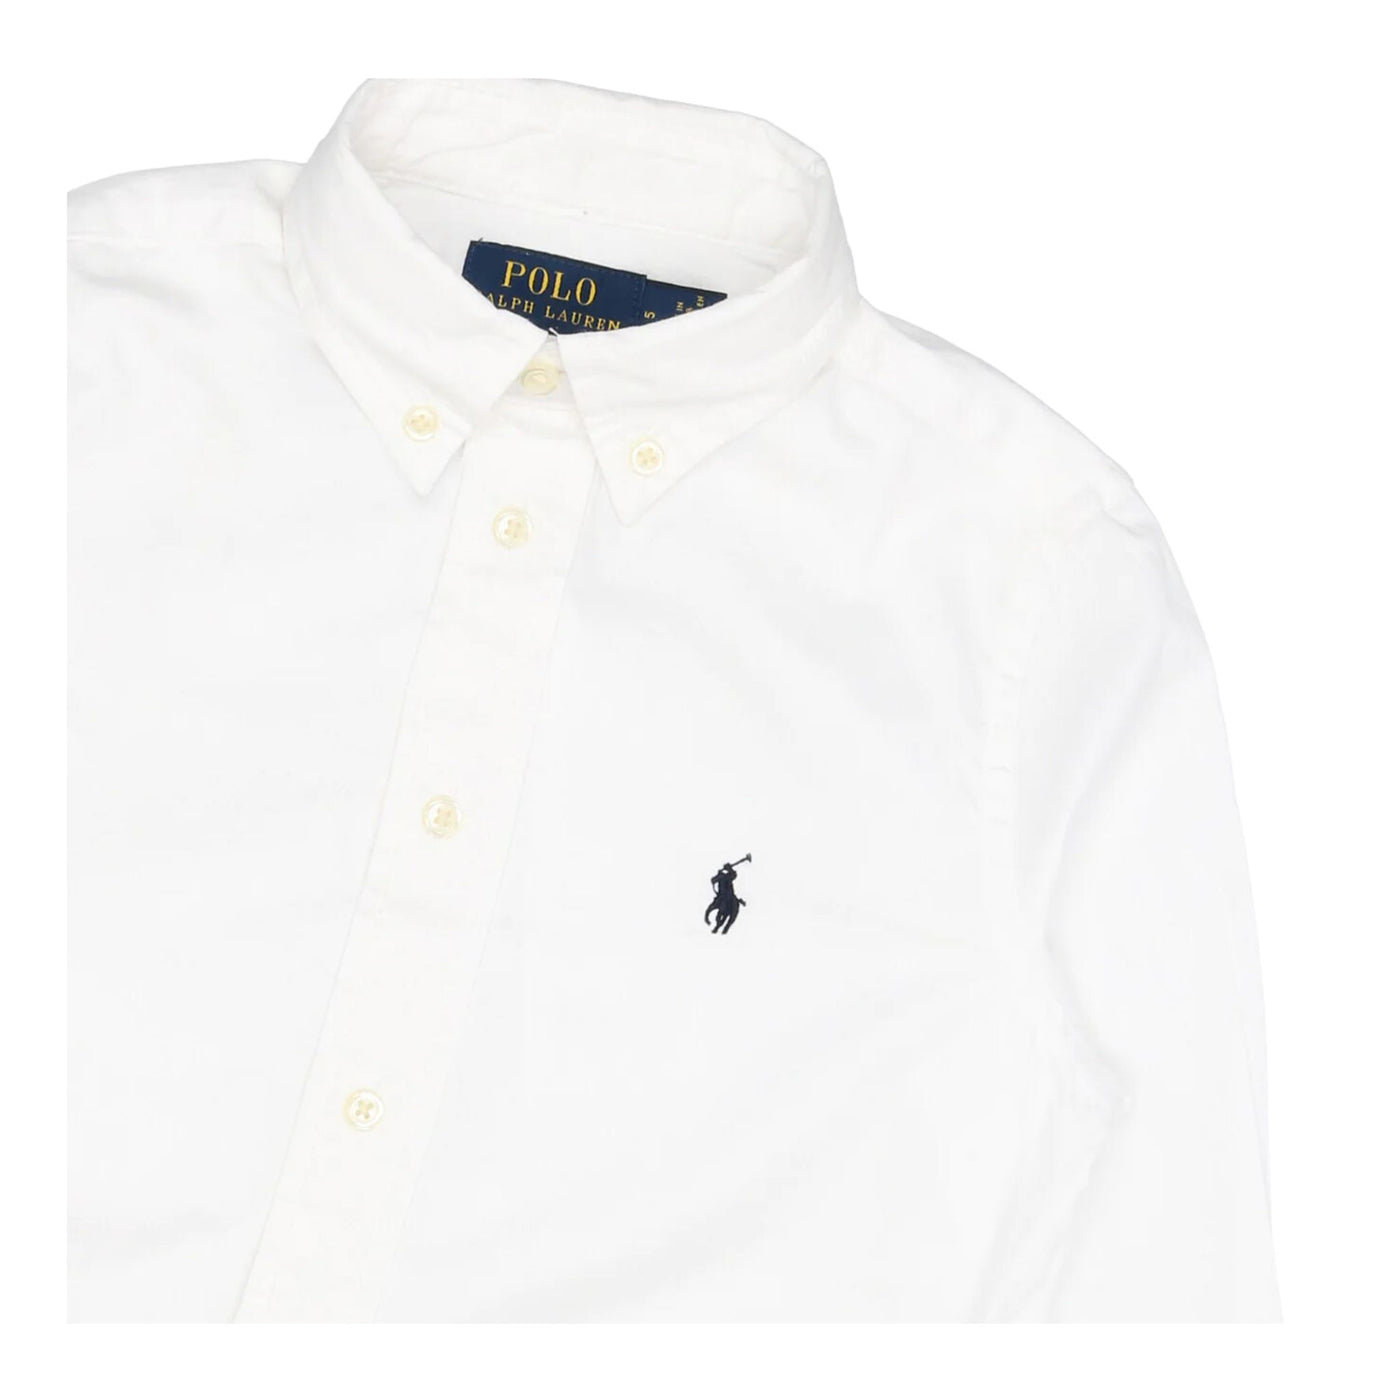 Camicia bianca per bambino con logo Polo Ralph Lauren ricamato,chiusura con bottoni e colletto classico